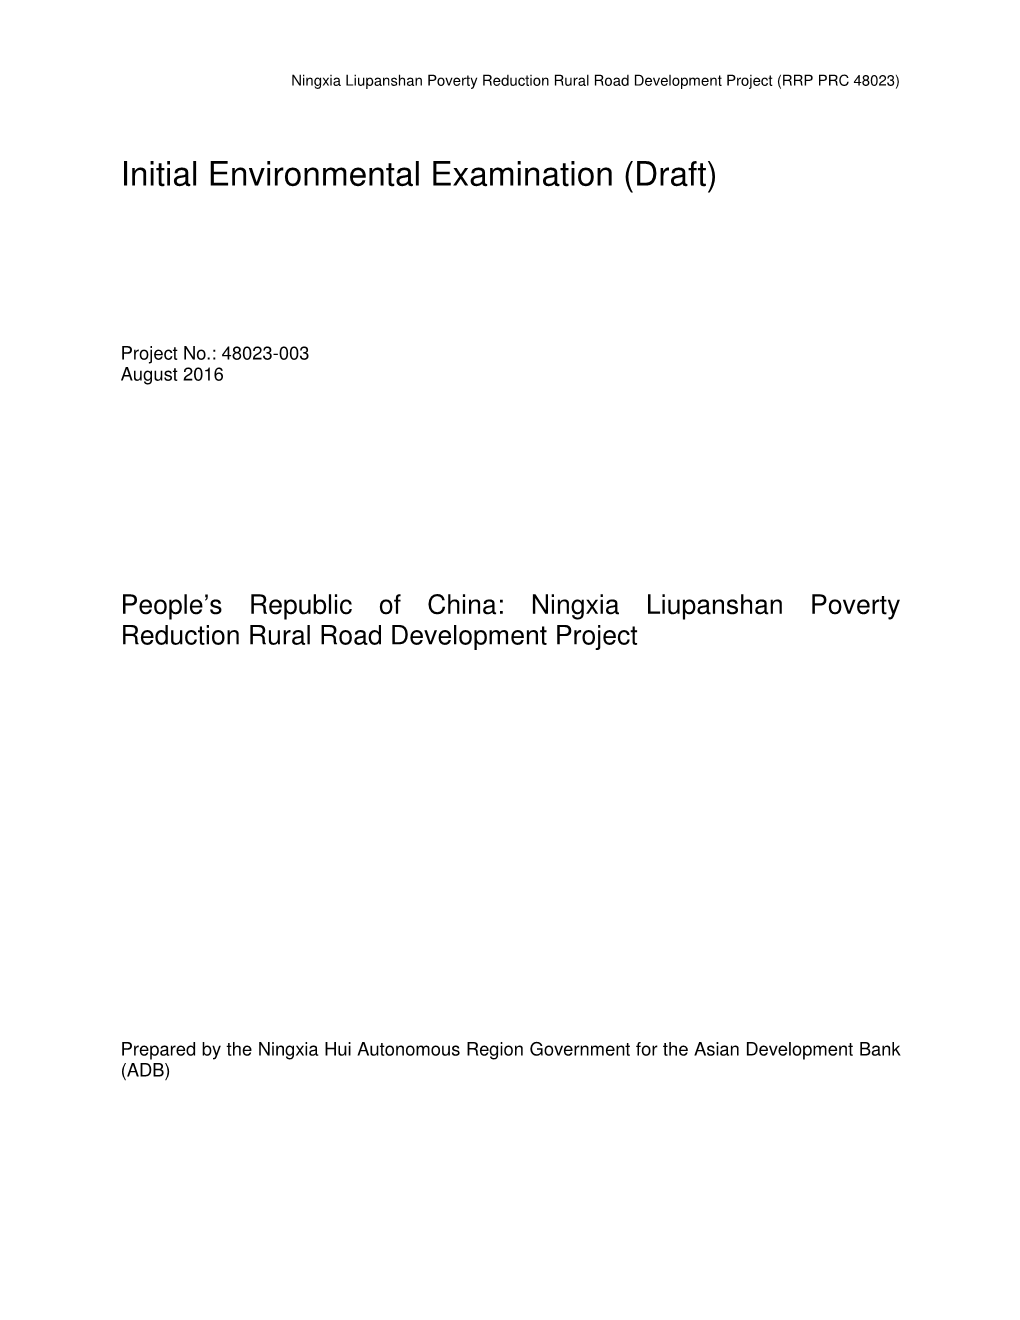 Initial Environmental Examination (Draft)